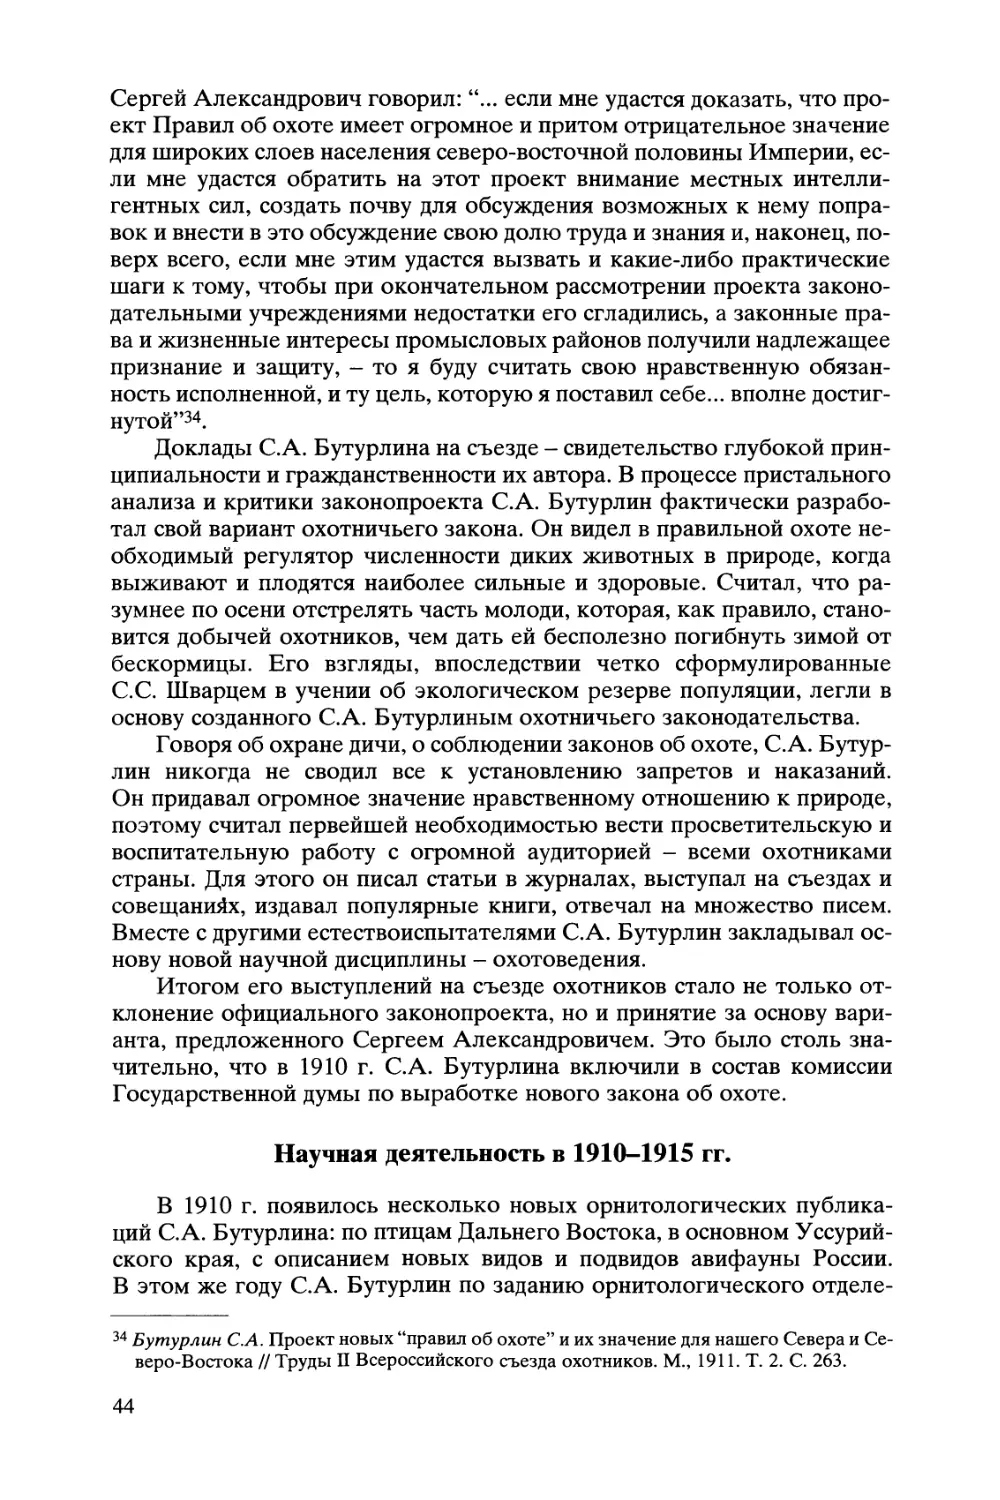 Научная деятельность в 1901-1915 гг.